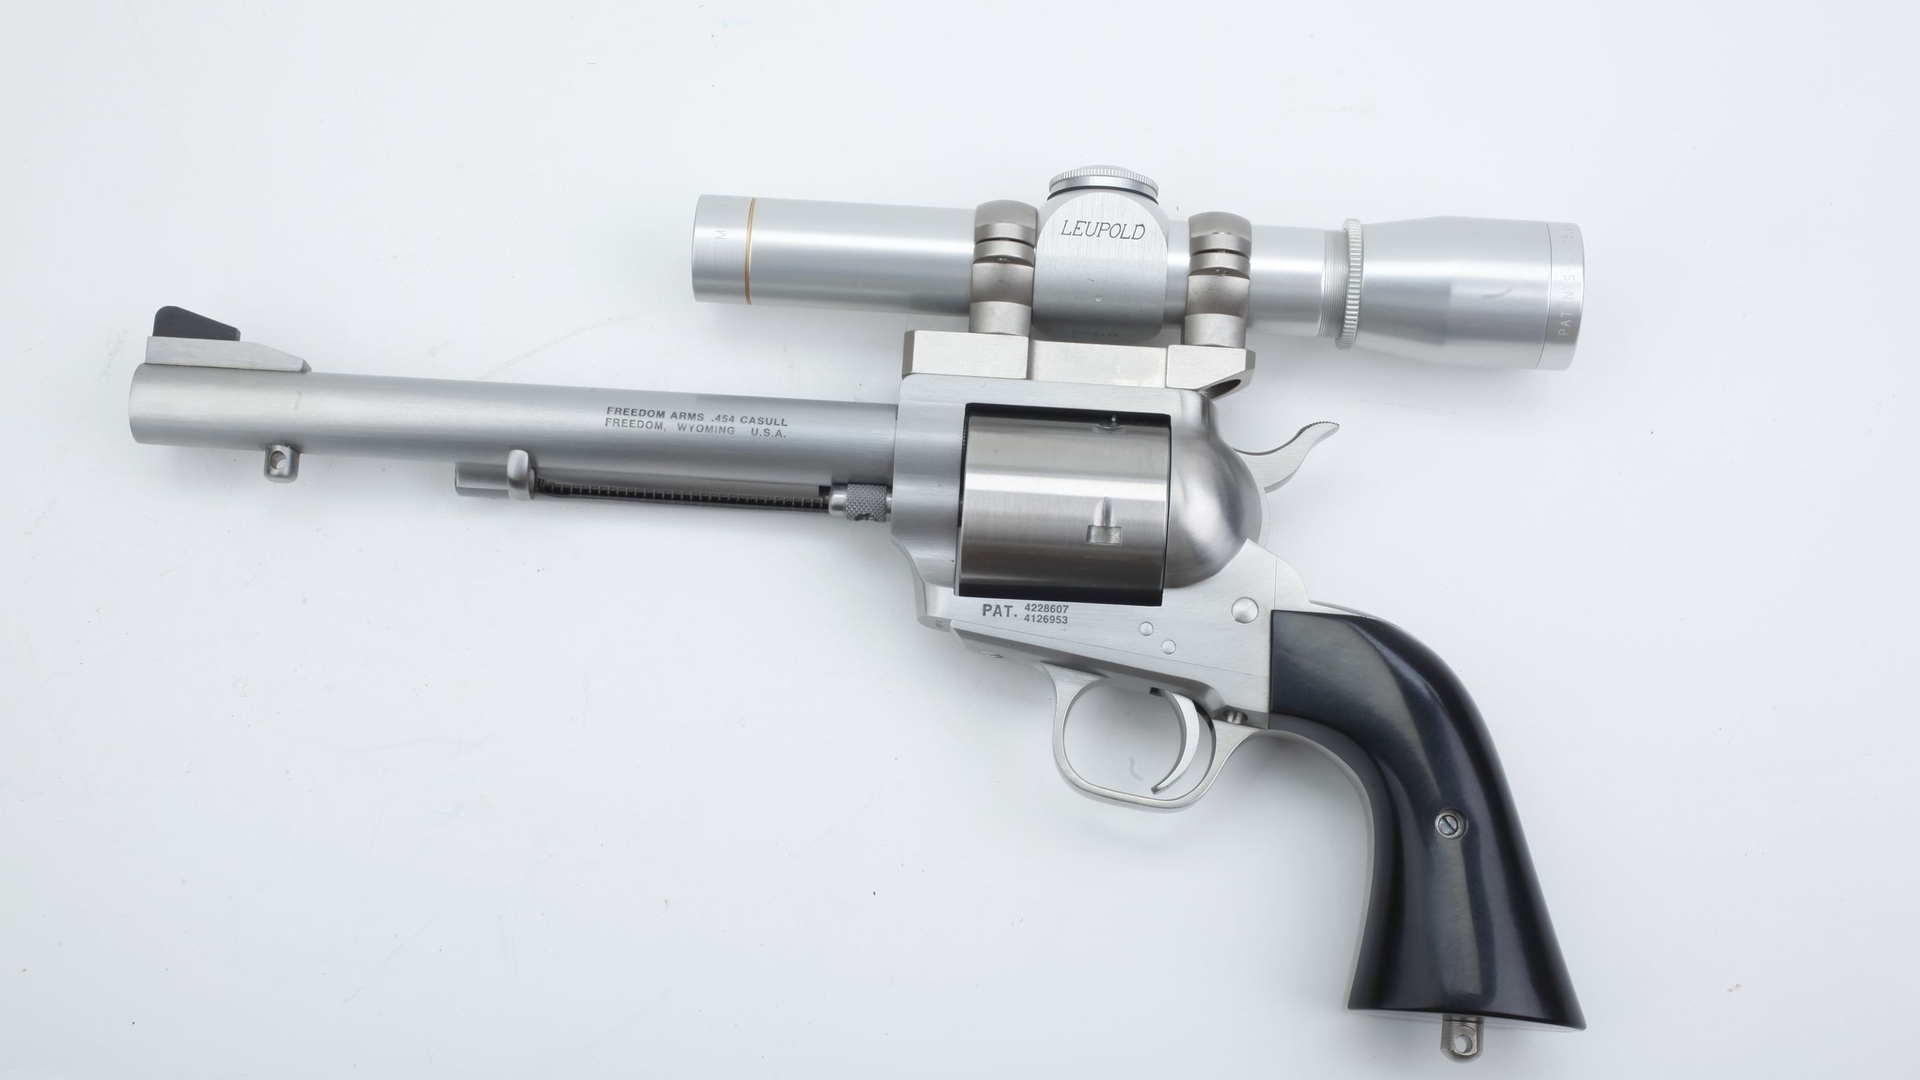 Популярные заставки и фоны Револьвер Freedom Arms 454 Casull на компьютер